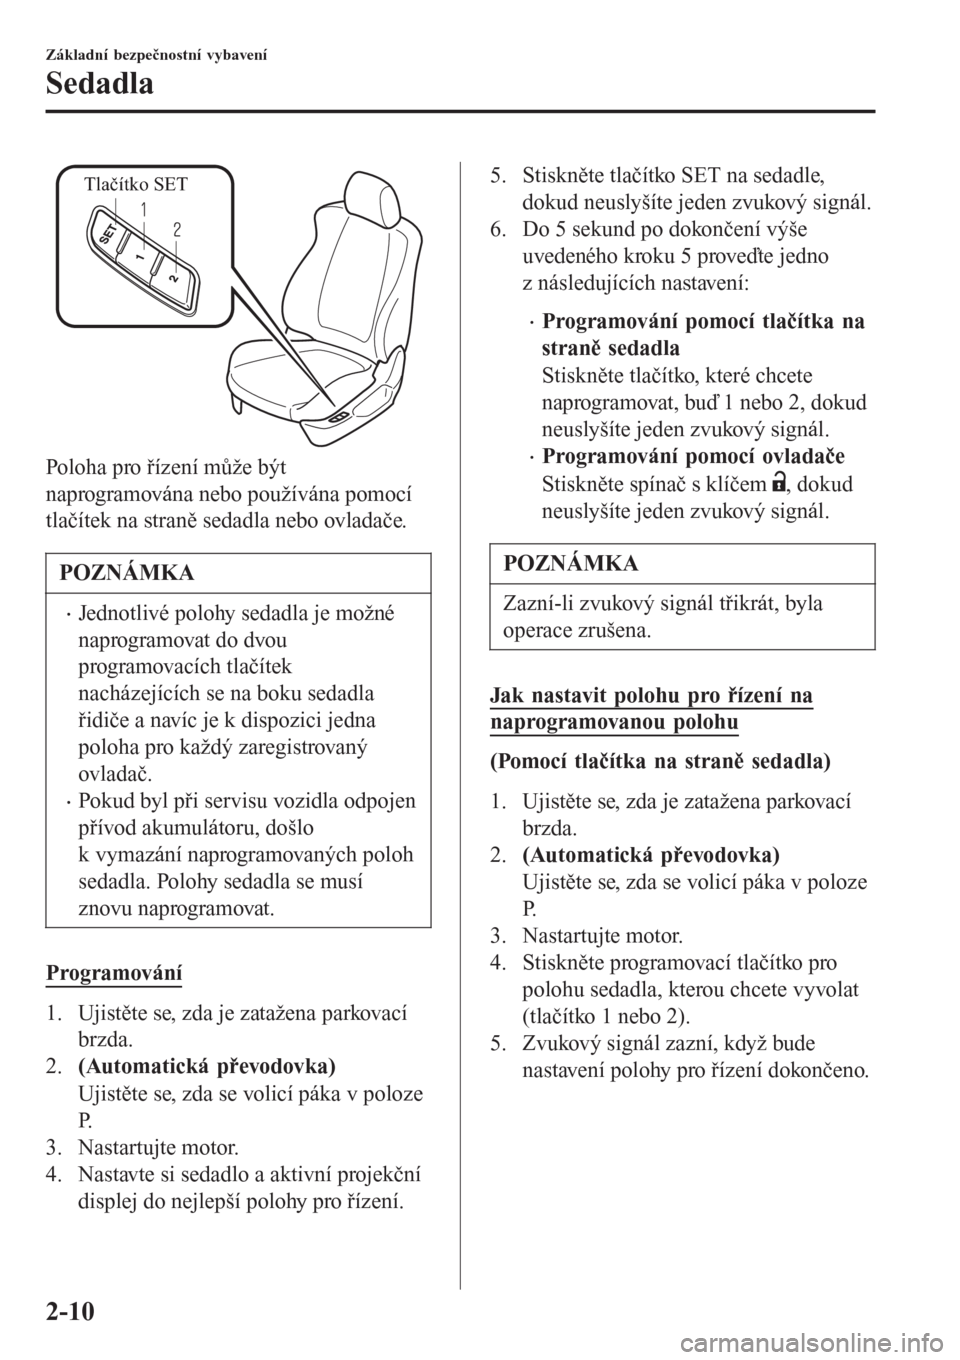 MAZDA MODEL 6 2016  Návod k obsluze (in Czech) Tlačítko SET
Poloha pro řízení může být
naprogramována nebo používána pomocí
tlačítek na straně sedadla nebo ovladače.
POZNÁMKA
•Jednotlivé polohy sedadla je možné
naprogramovat